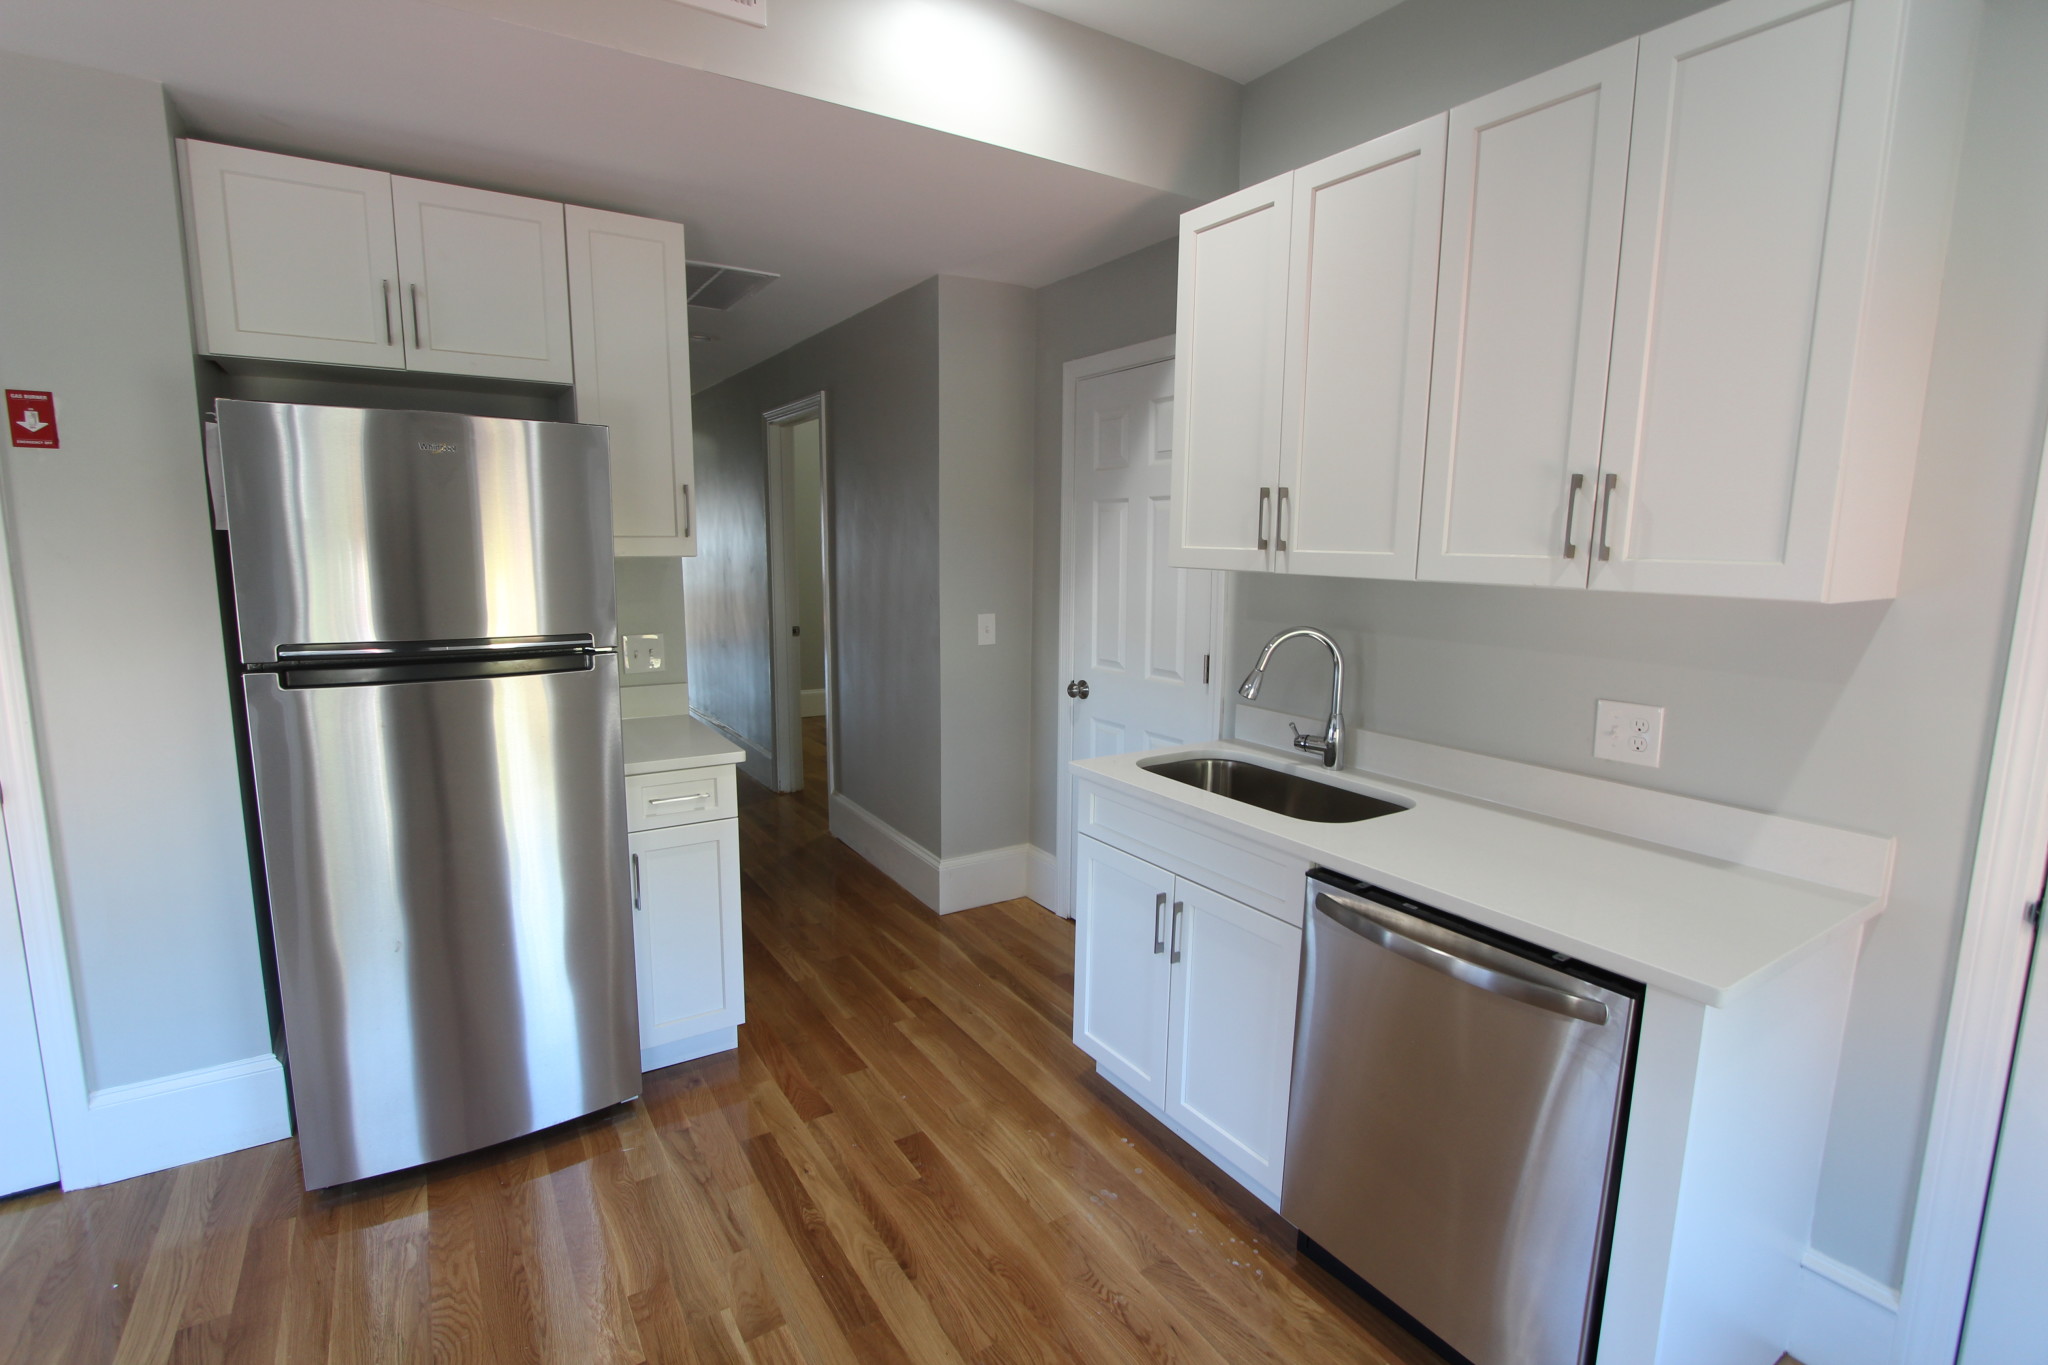 Photos of apartment on Falcon,Boston MA 02128